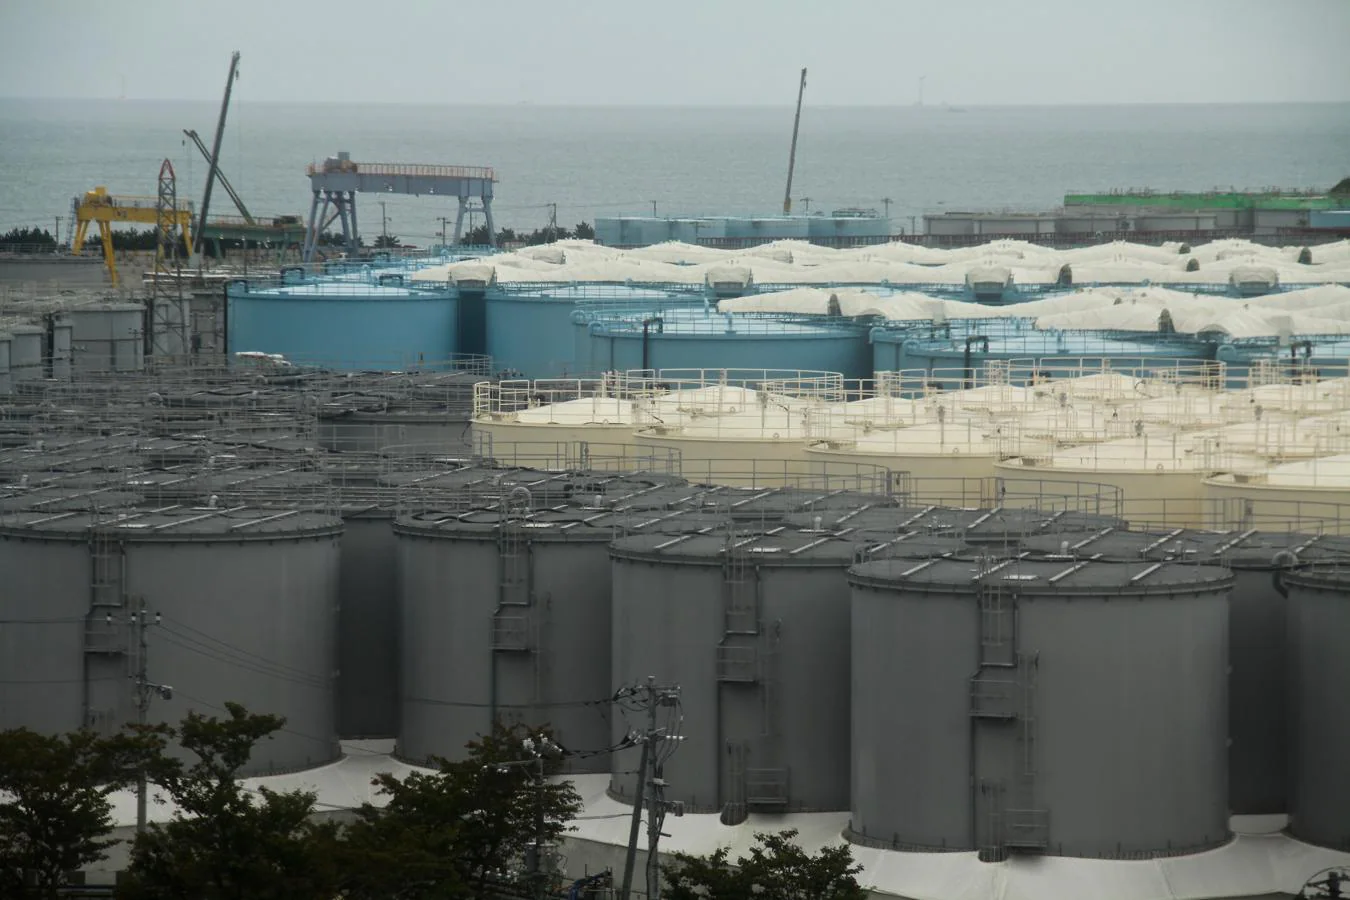 Gigantescos tanques almacenan el agua contaminada que se bombea para mantener fríos los reactores, ya que el tritio radiactivo no se puede filtrar. 